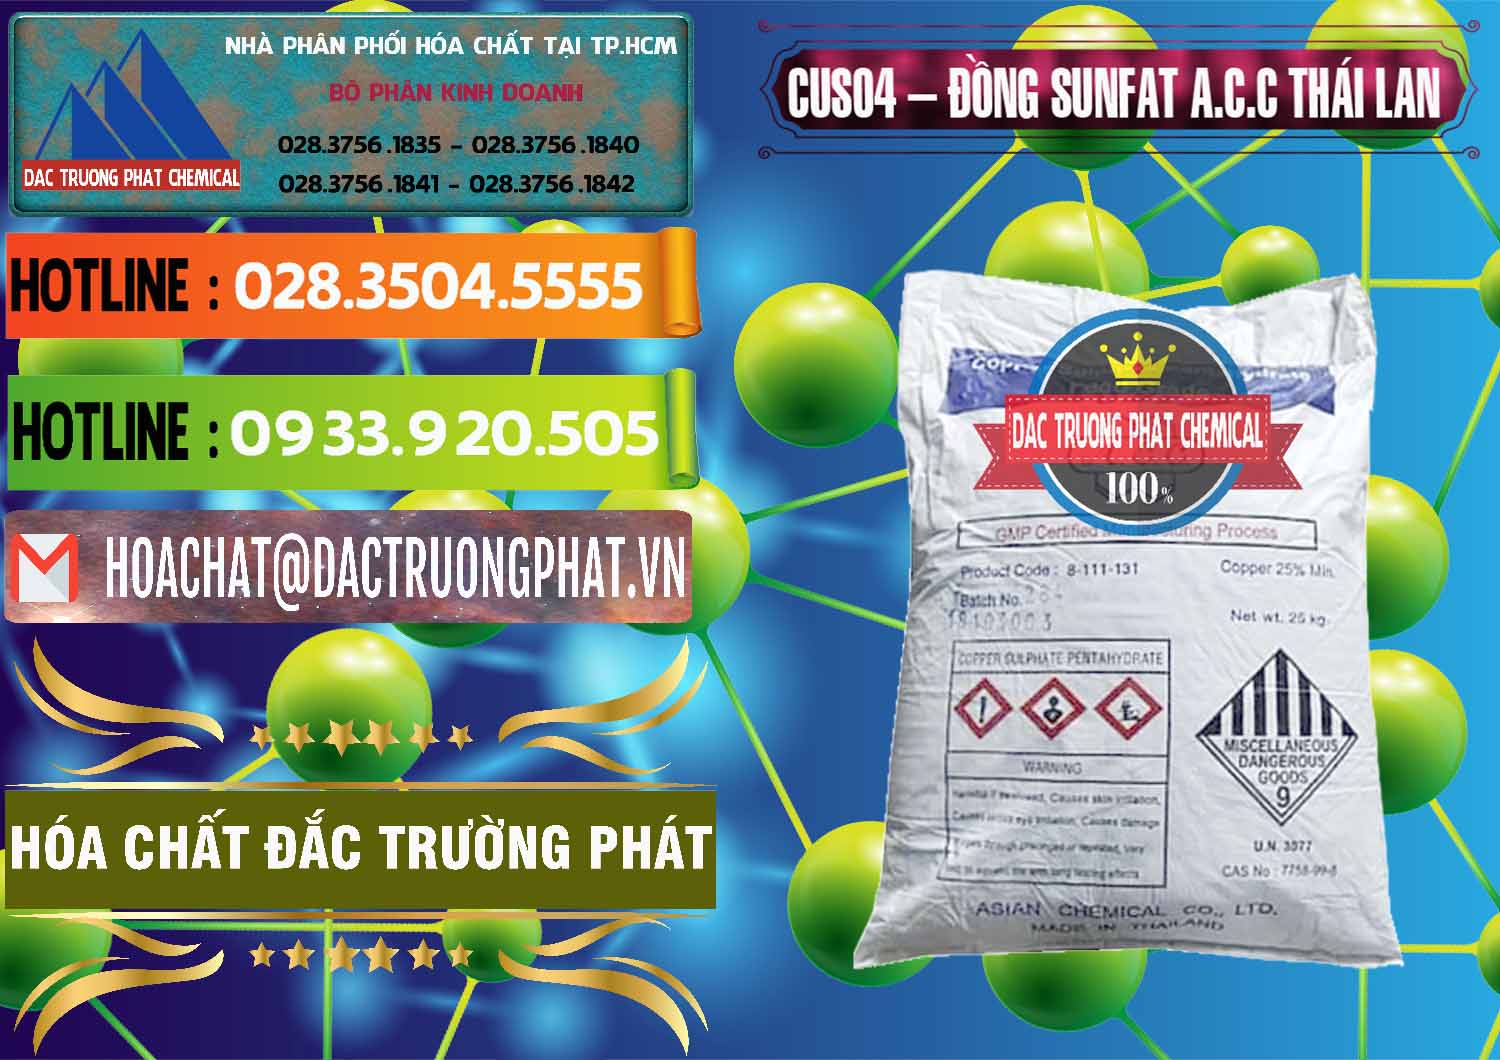 Công ty chuyên cung cấp ( bán ) CuSO4 – Đồng Sunfat A.C.C Thái Lan - 0249 - Phân phối ( cung cấp ) hóa chất tại TP.HCM - cungcaphoachat.com.vn